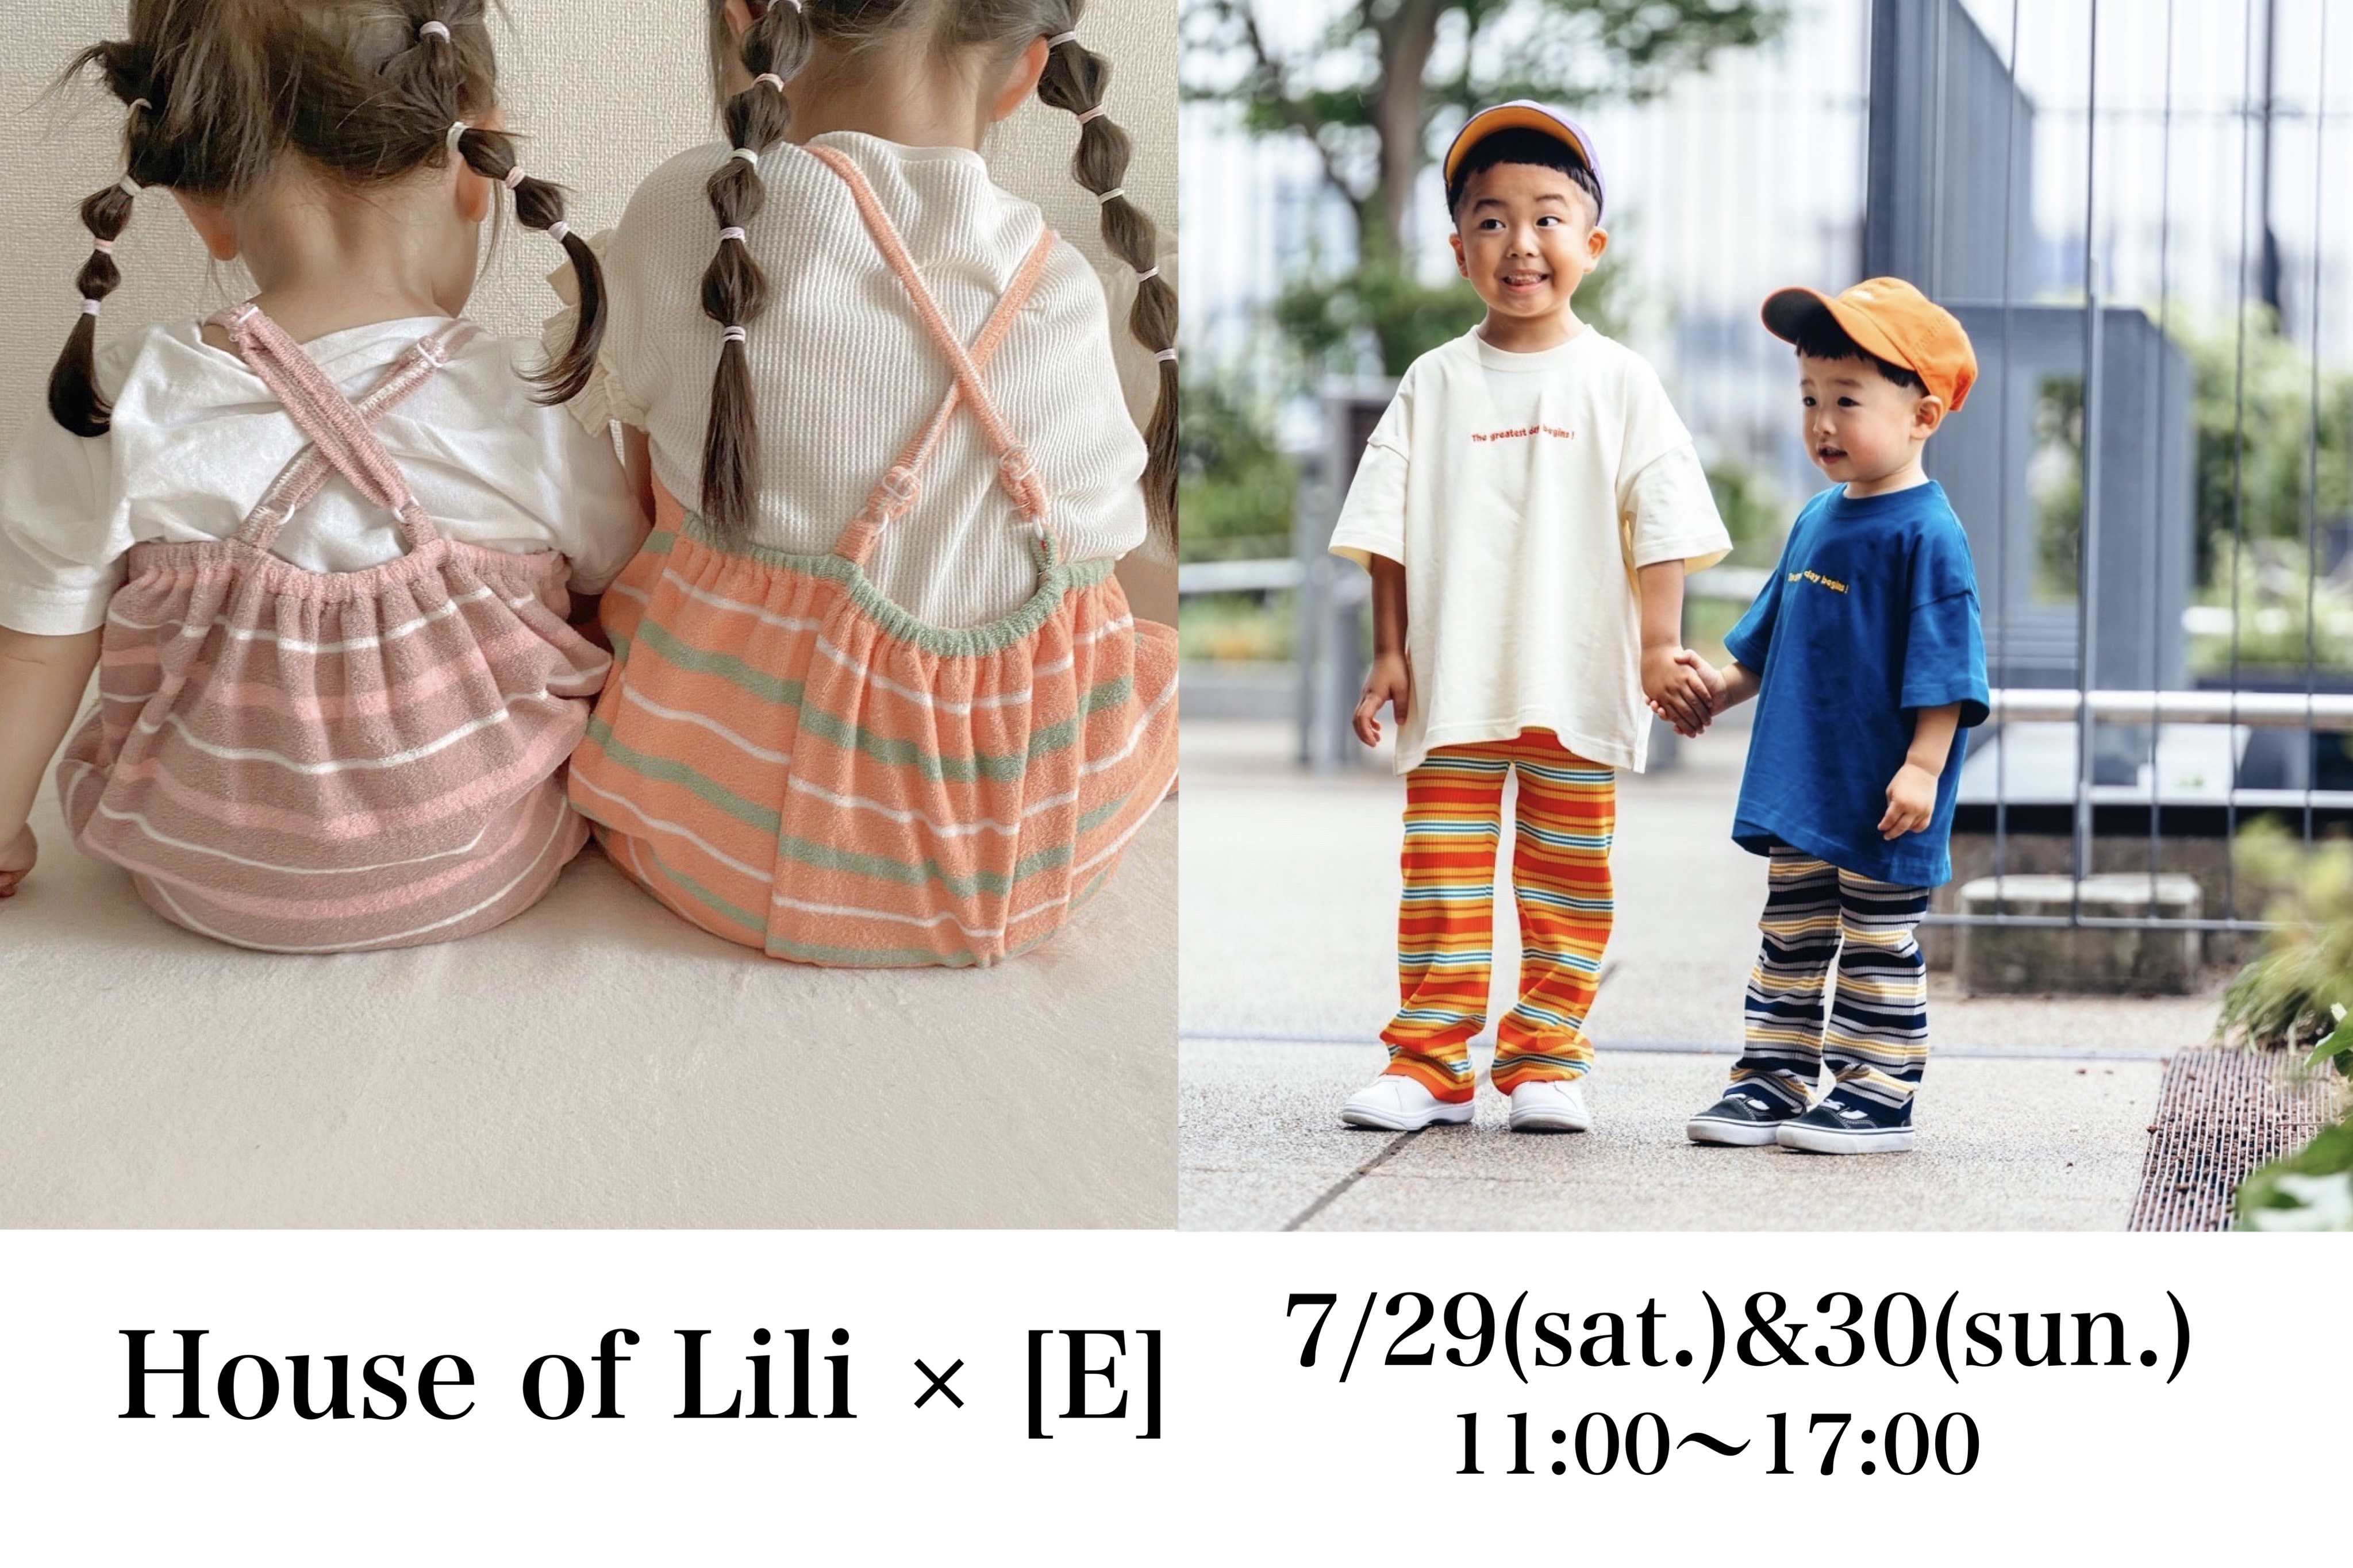 7/29(sat.)&30(sun.) [E]×House of Lili popup開催します！